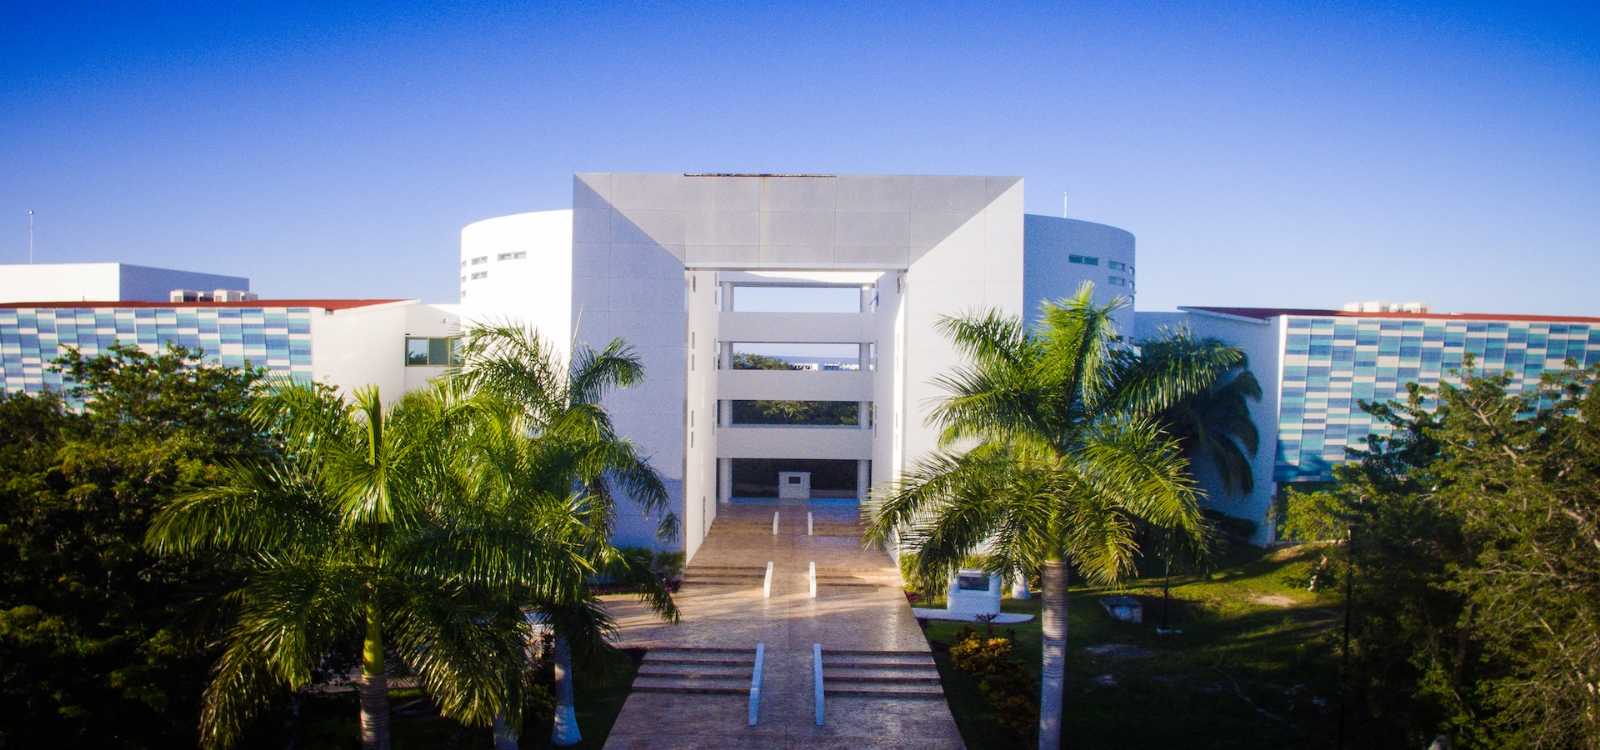 Universidad de Quintana Roo es nombrada Autónoma